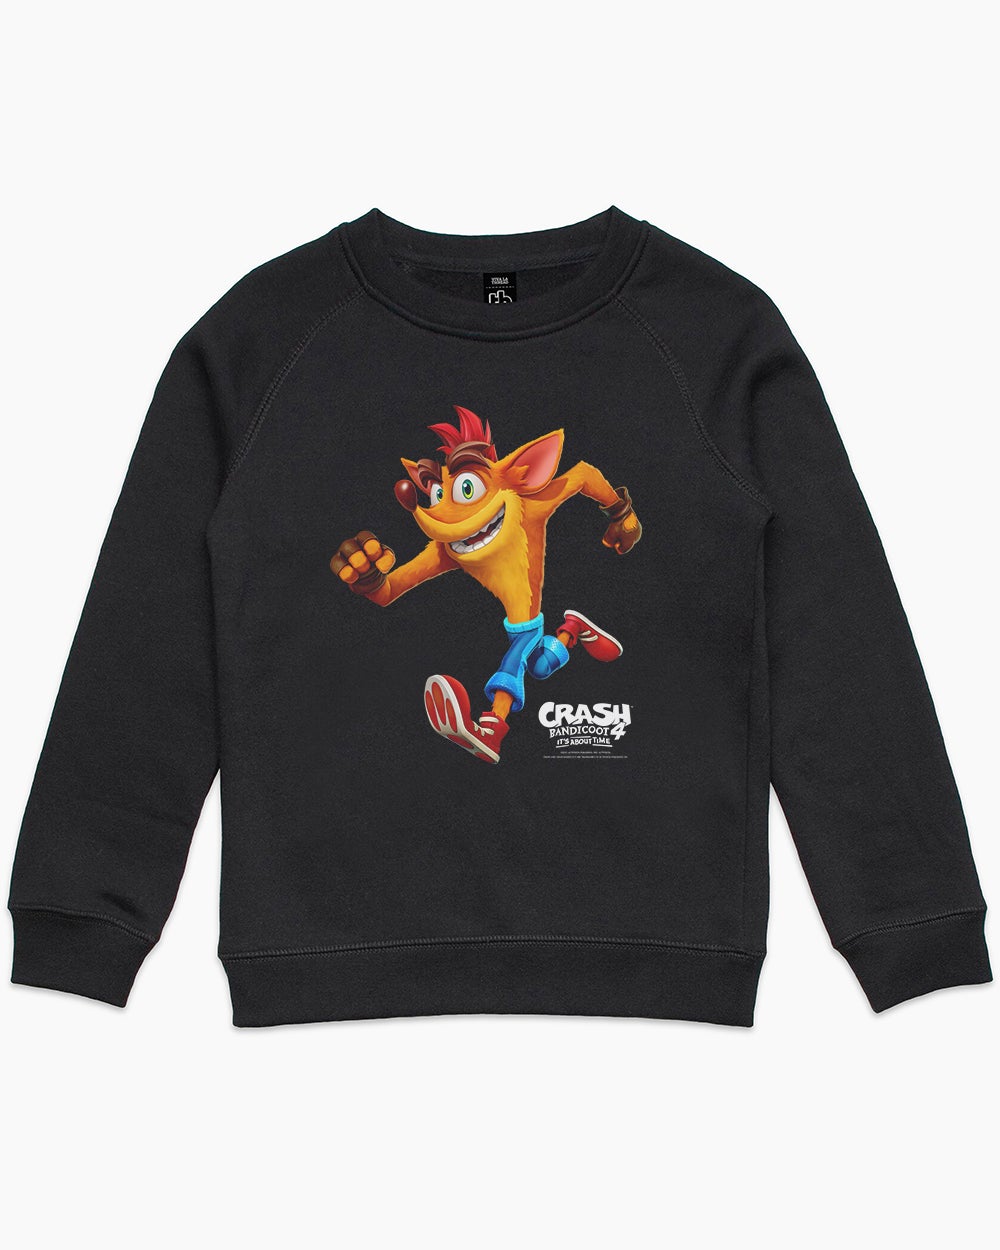 Crash It's About Time Kids Sweater Australia Online #colour_black